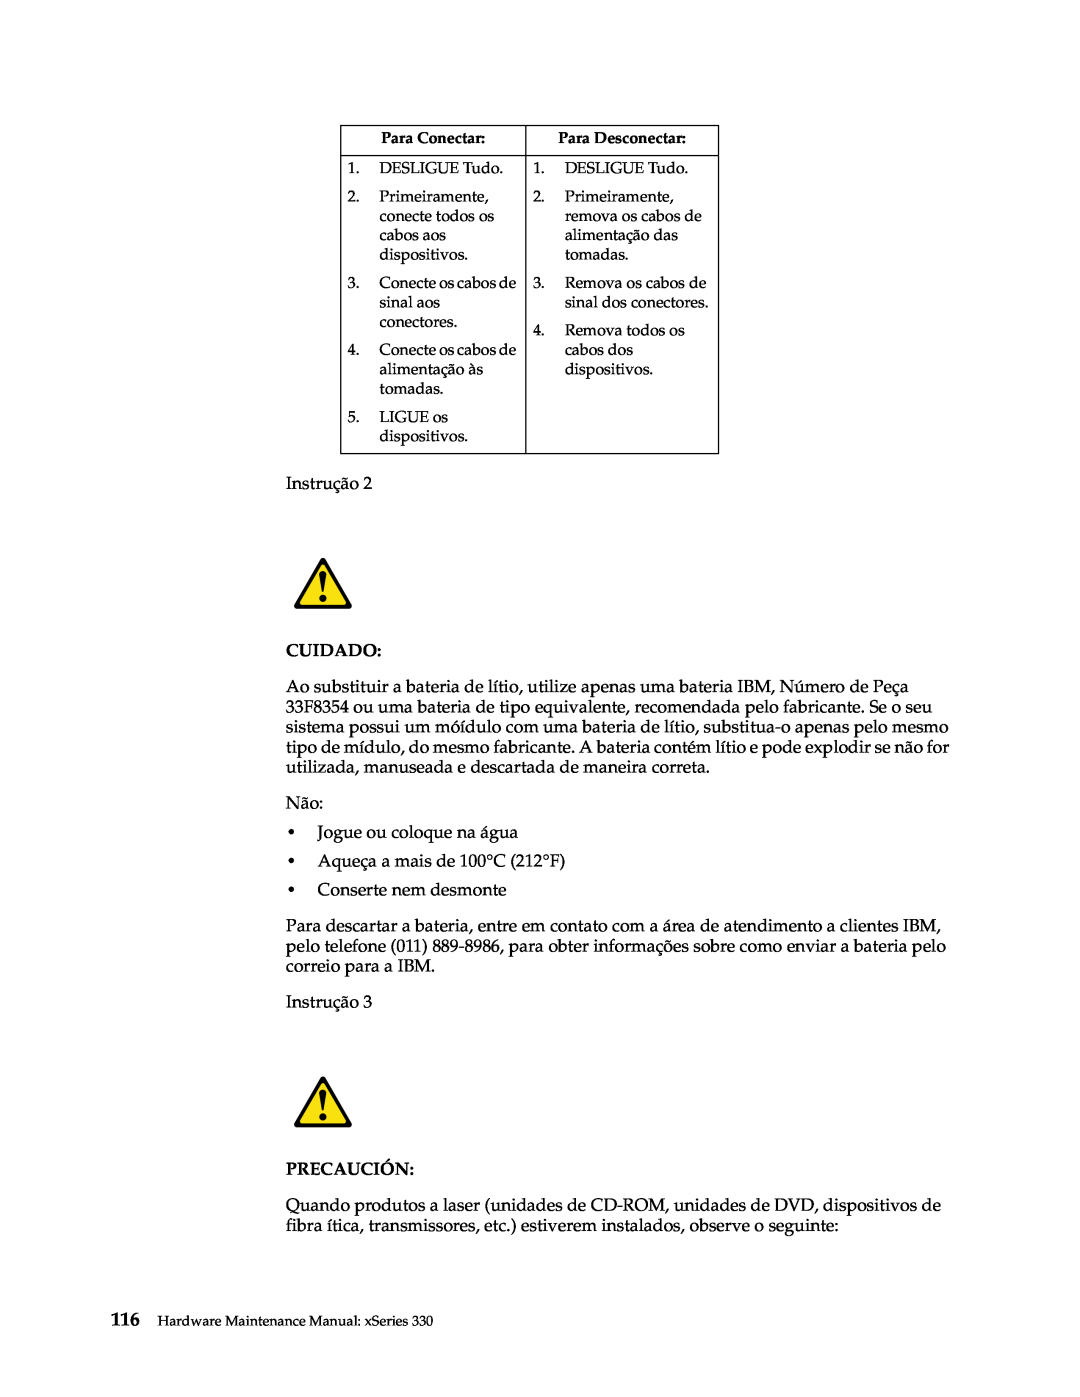 IBM xSeries 330 manual Cuidado, Precaución 